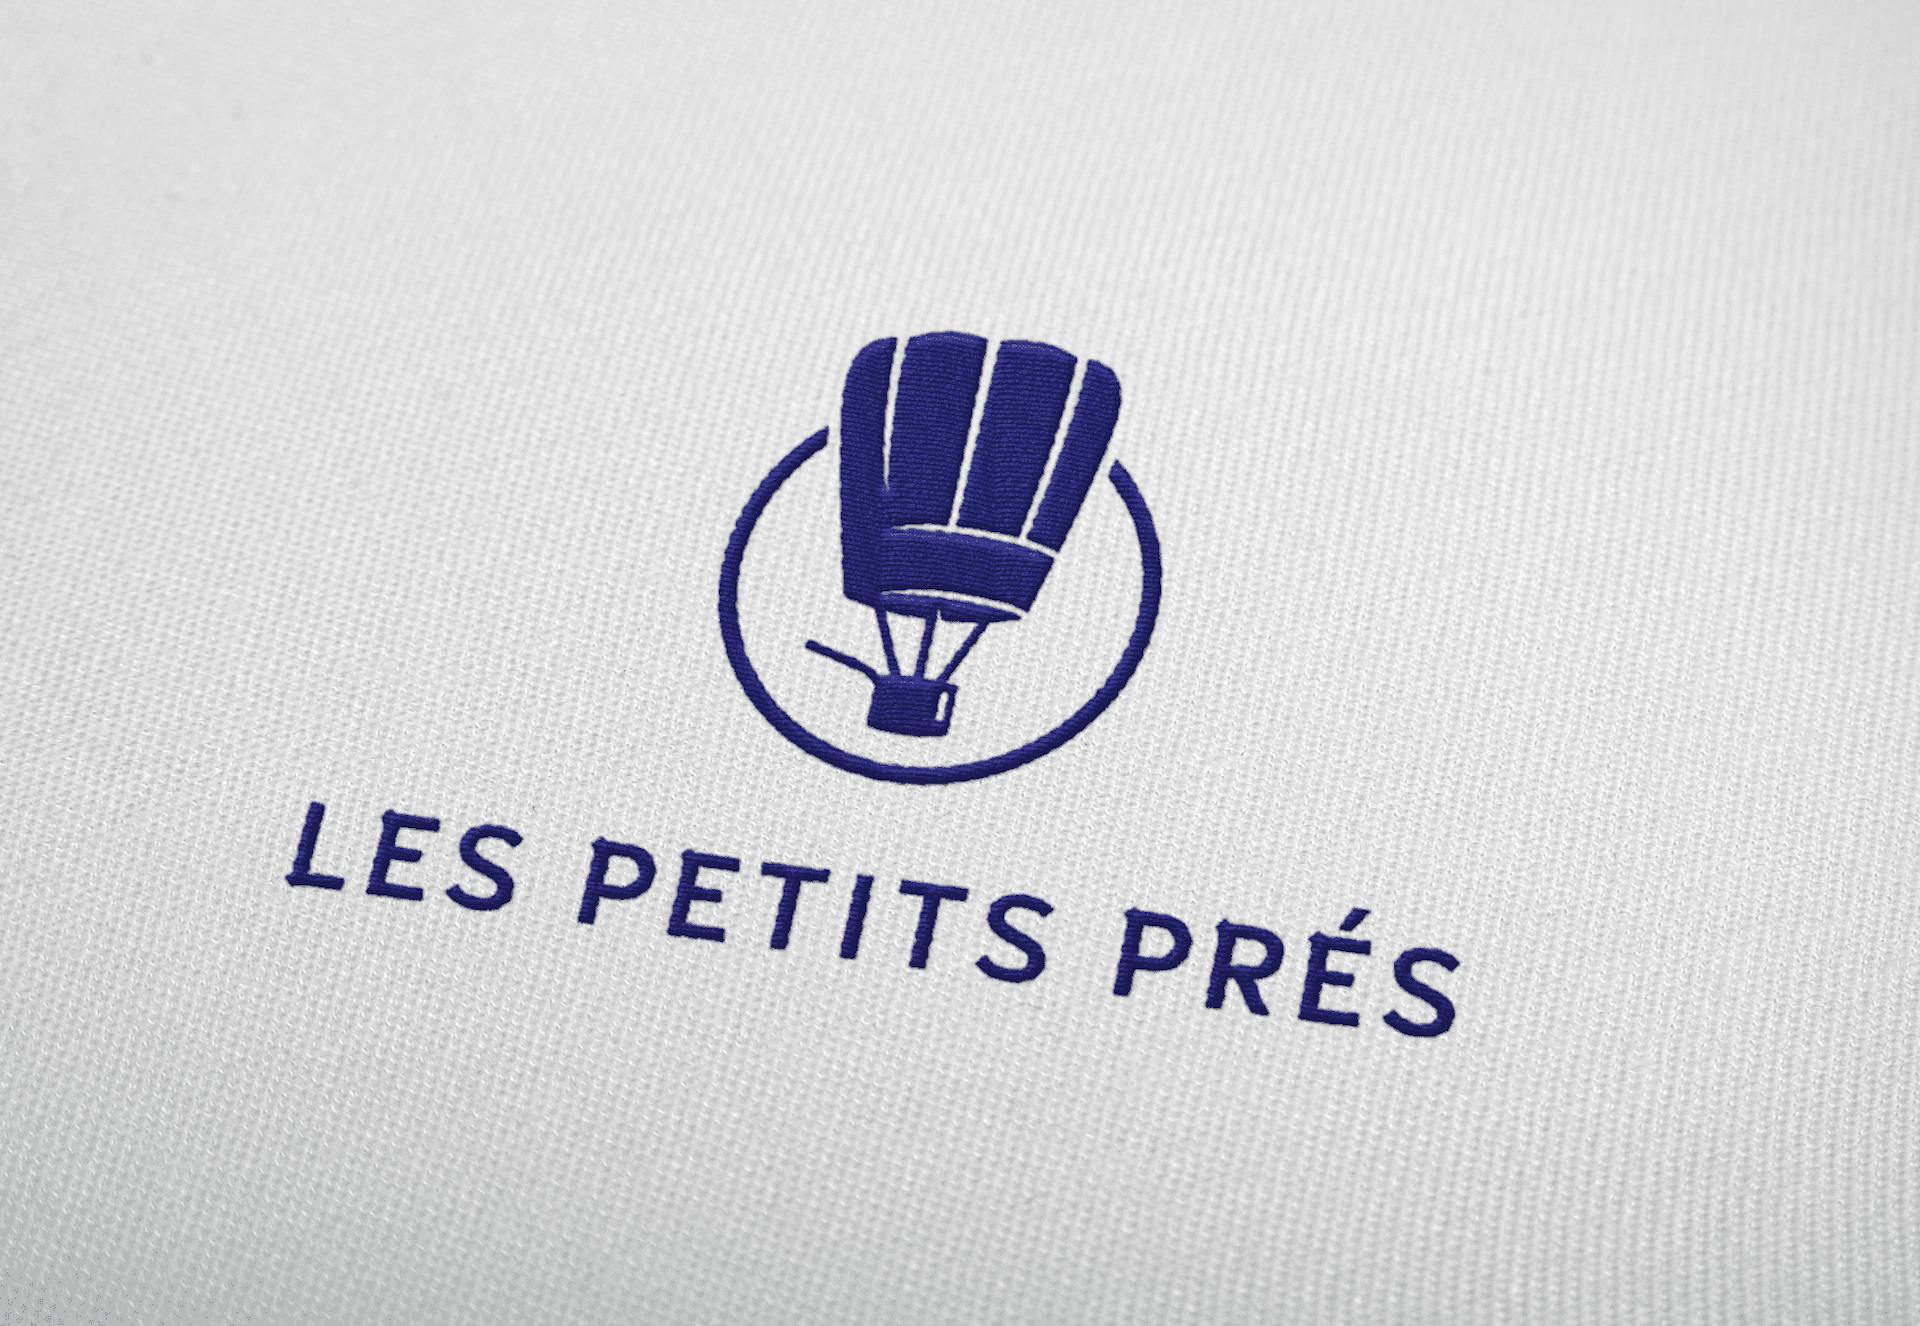 Mockup du nouveau logo du restaurant "Les Petits Prés" sur tissu, réalisé par l'agence de design graphique Studio Katra